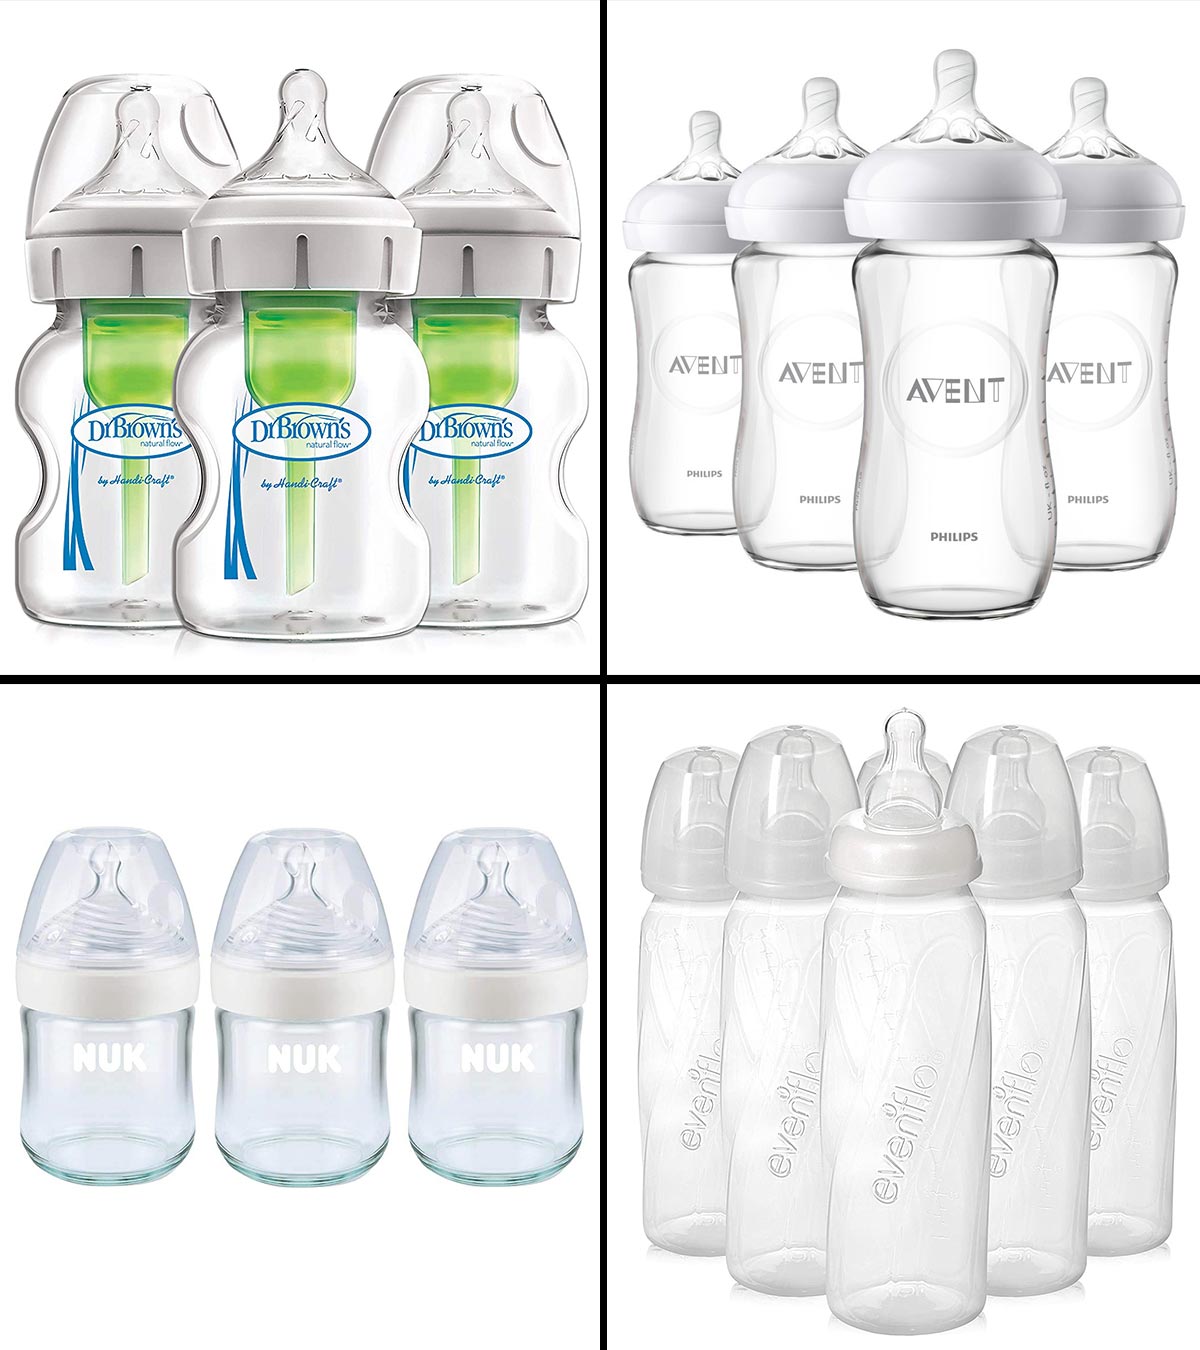 https://www.momjunction.com/wp-content/uploads/2021/08/11-Best-Glass-Baby-Bottles-In-2021-Banner-MJ-Recovered.jpg